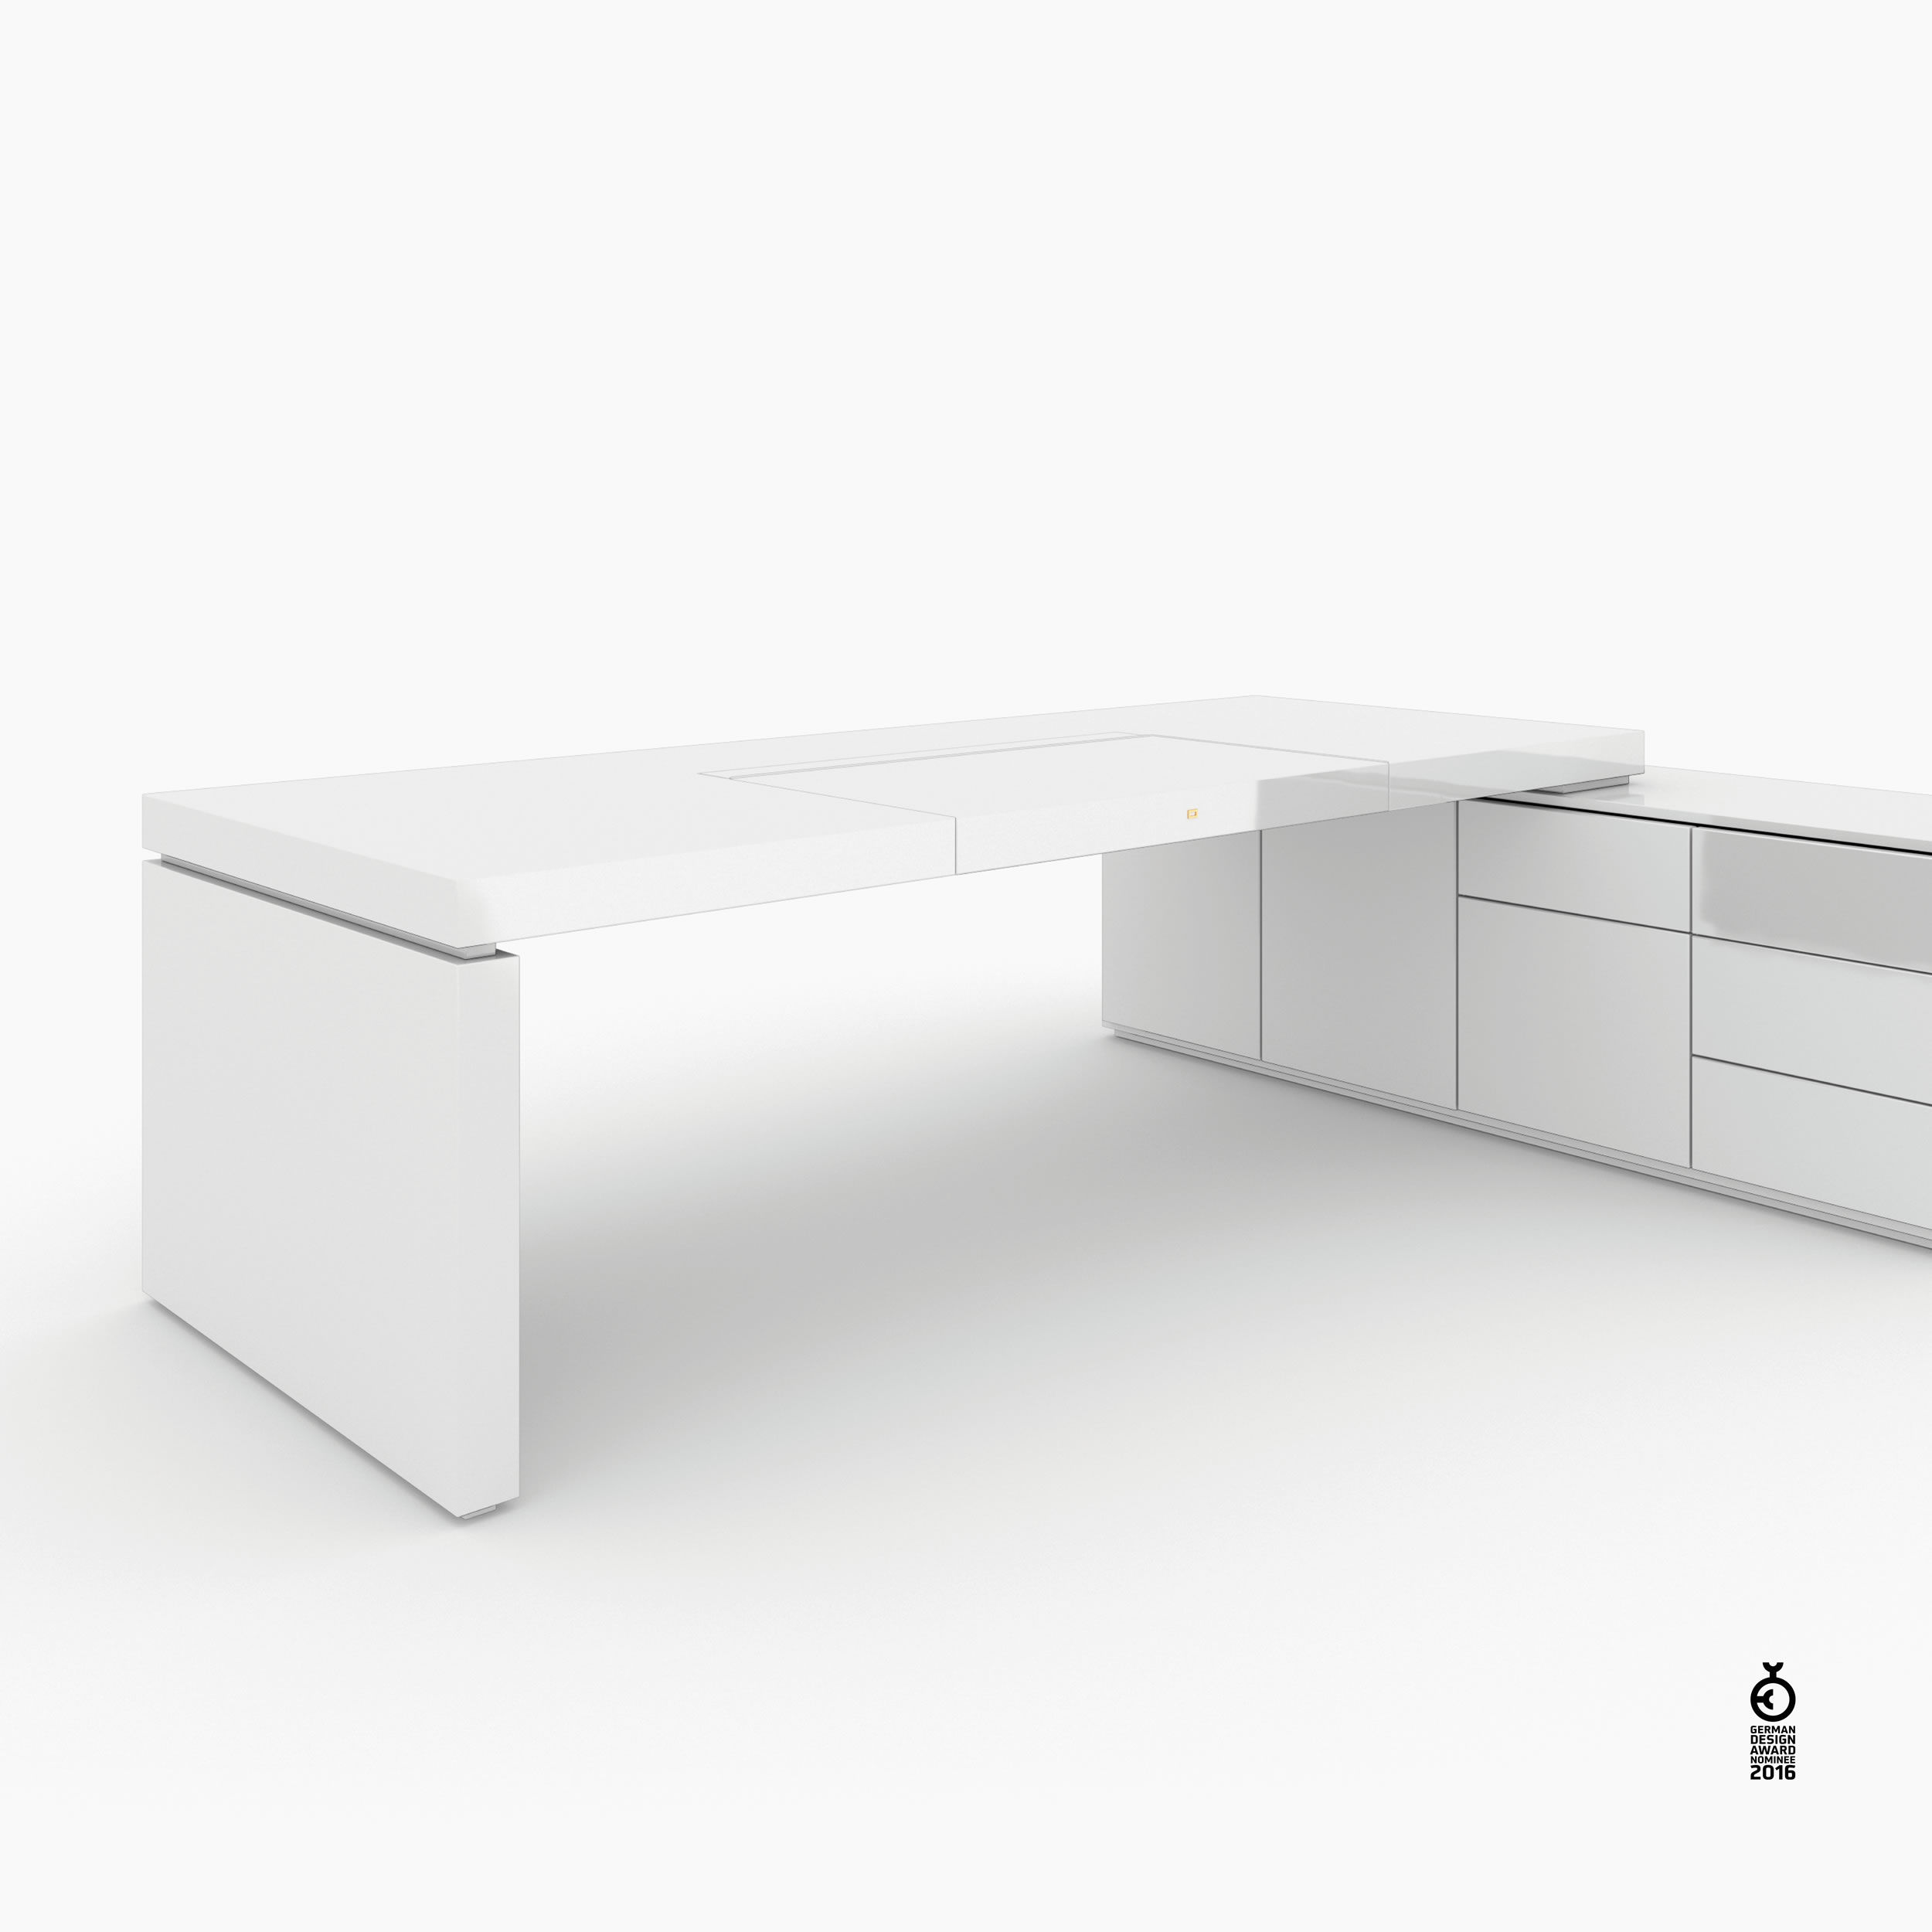 Schreibtisch scheiben und quader weiss luxury Chefzimmer contemporary art Schreibtische FS 93 FELIX SCHWAKE